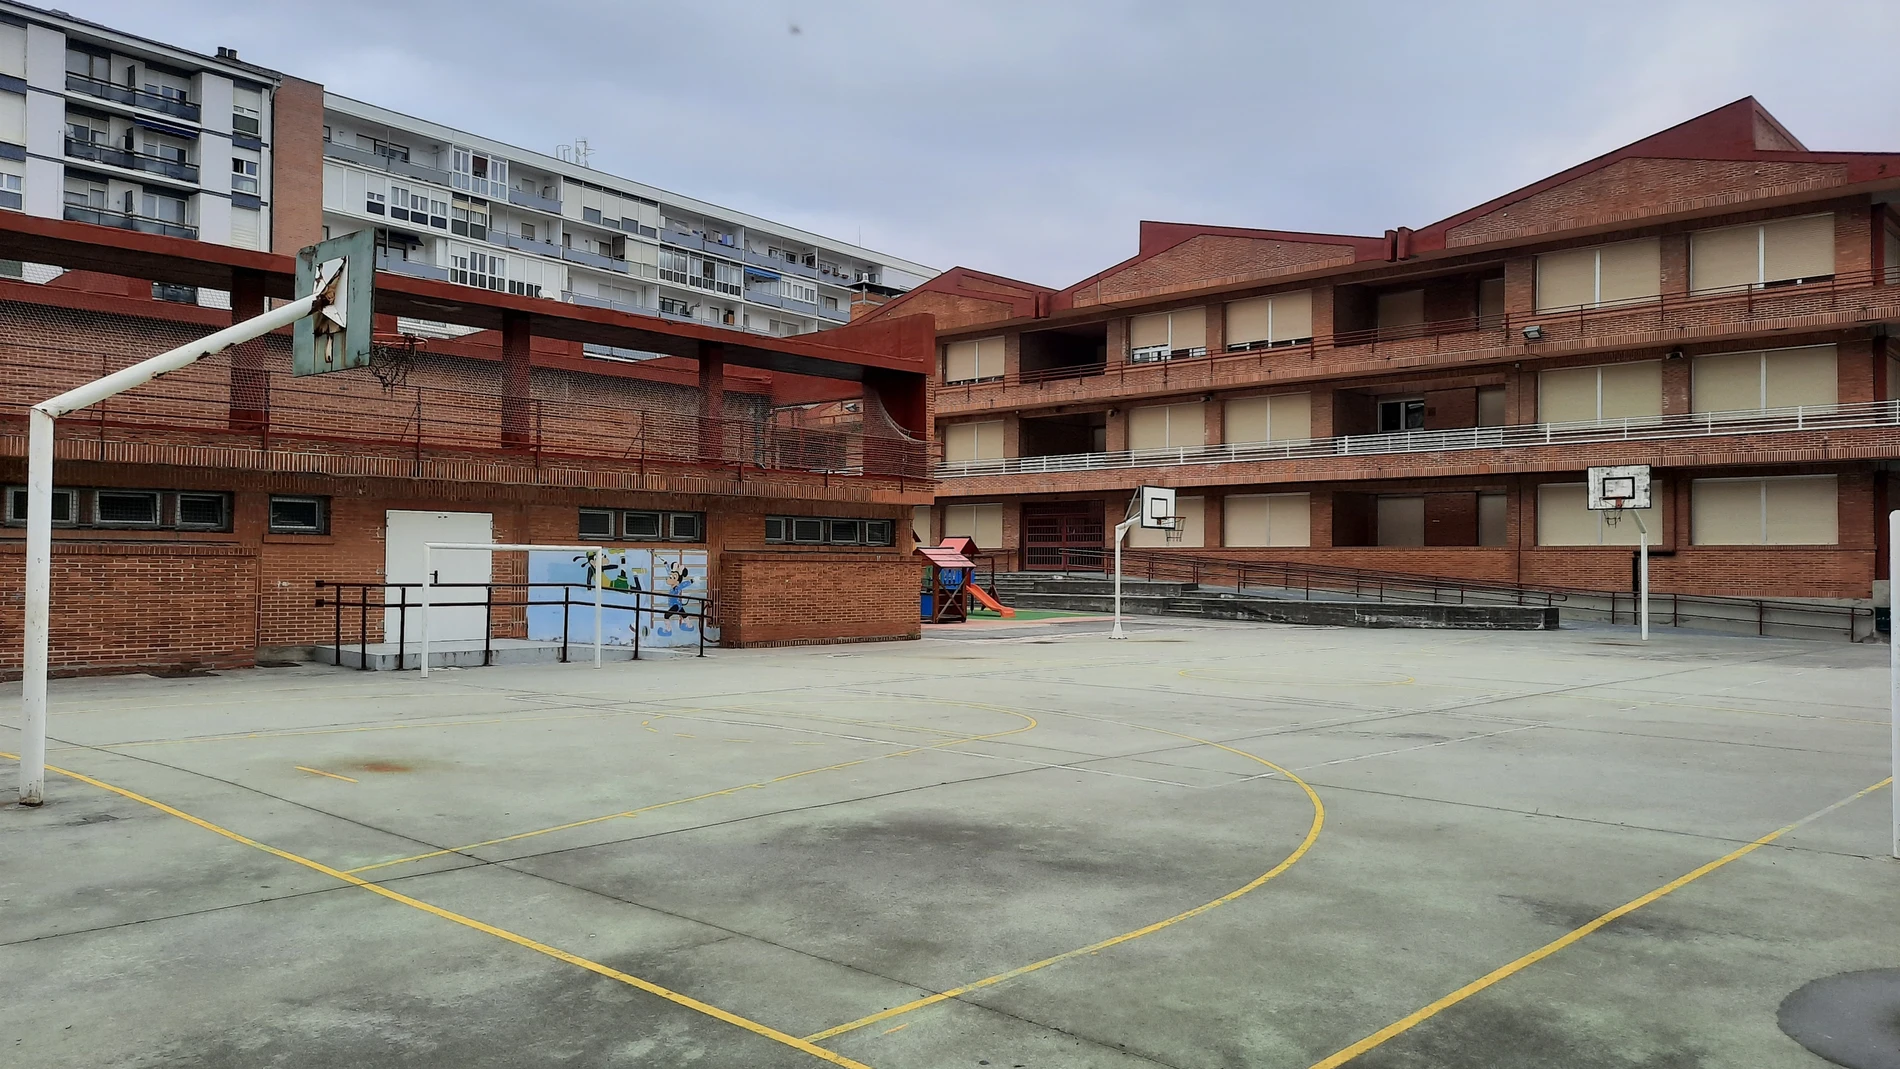 AMP.- Recetas de la OCDE ante el abandono escolar en España: Identificar centros vulnerables y fin del horario intensivo